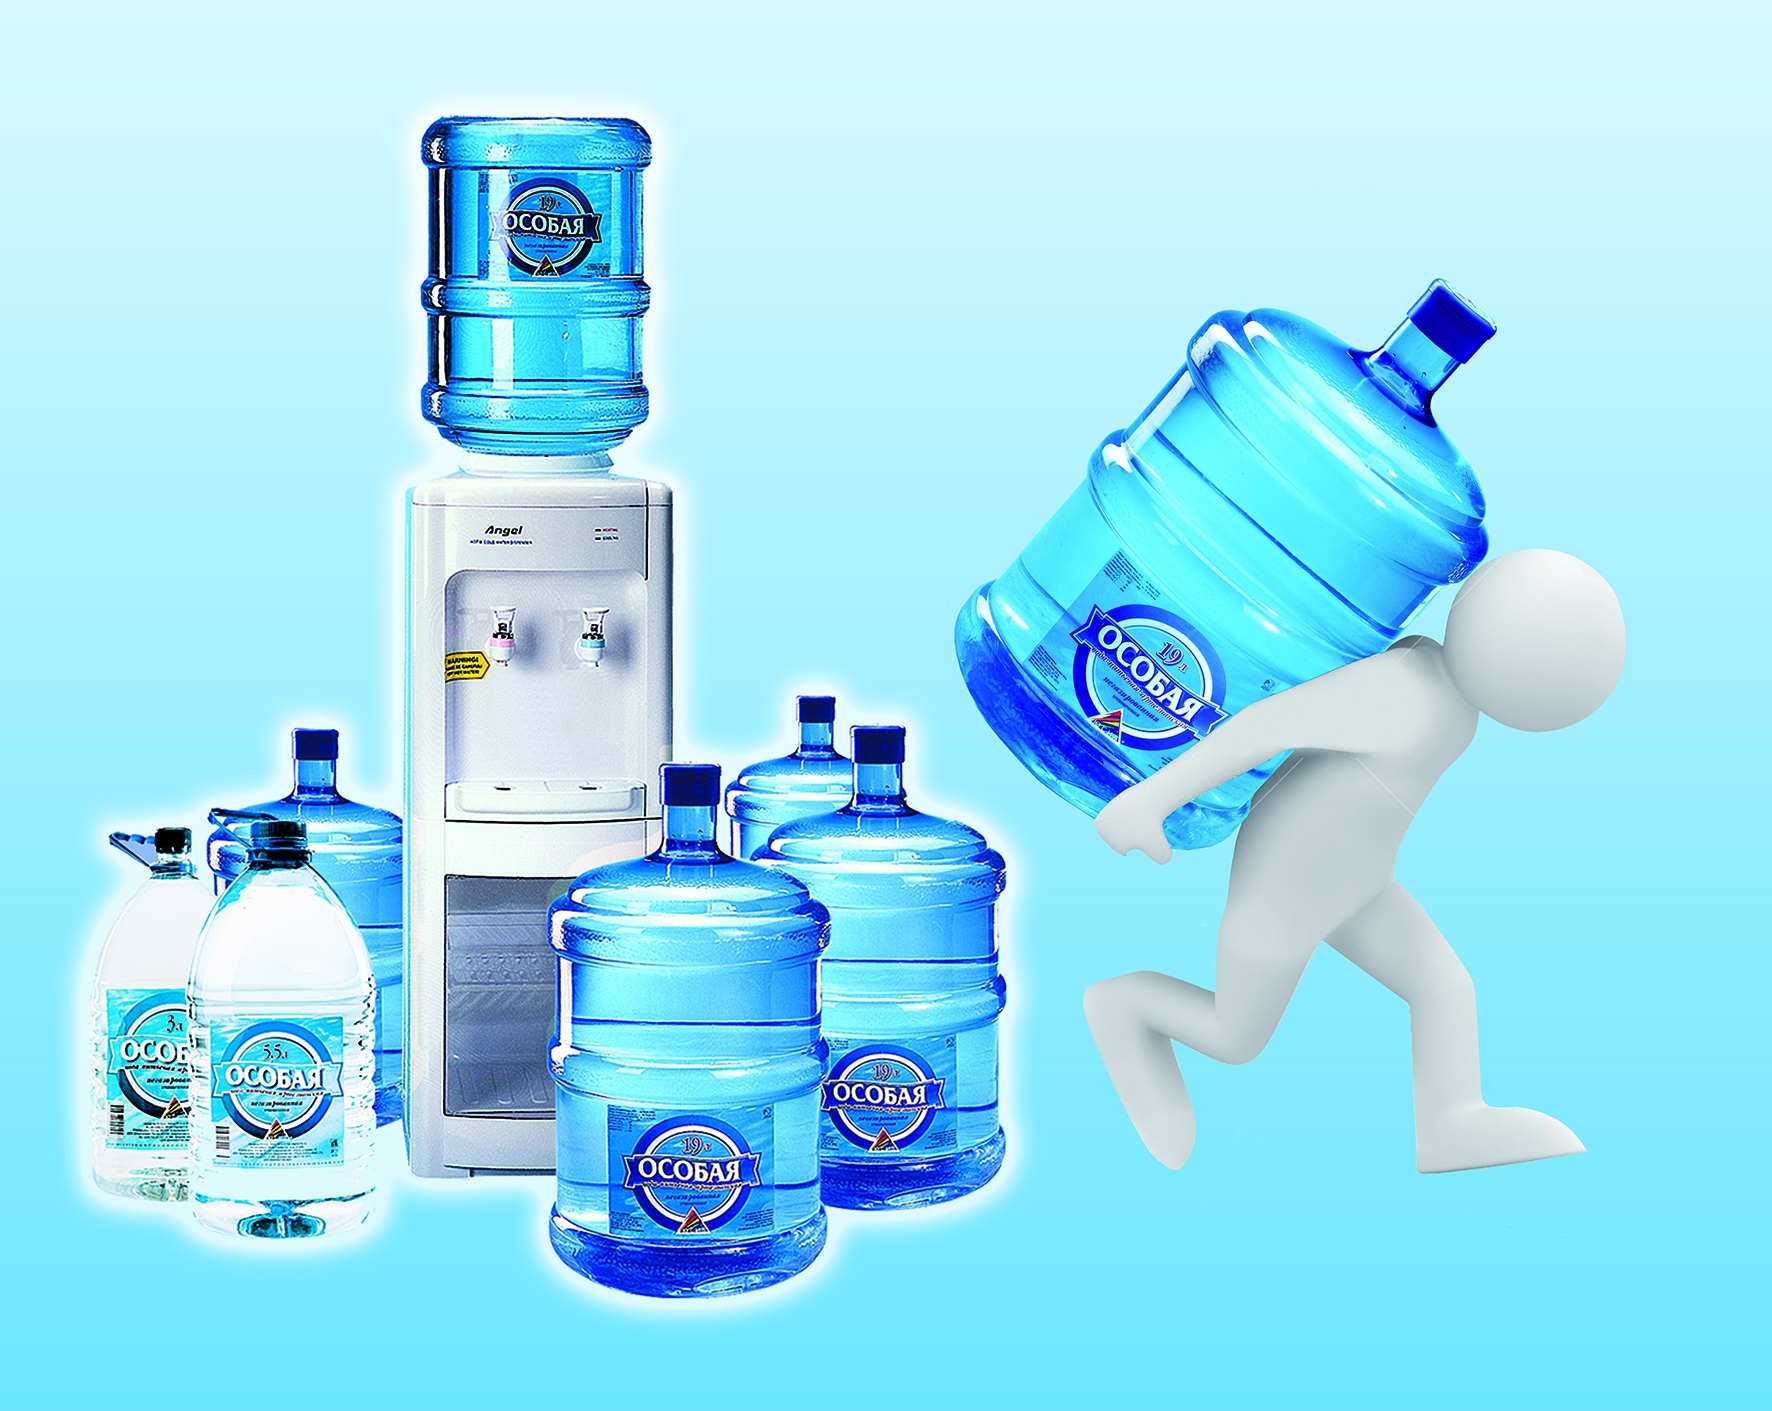 Заказ воды день в день. Бутилированная вода. Реклама бутилированной воды. Доставка воды. Вода питьевая бутилированная.